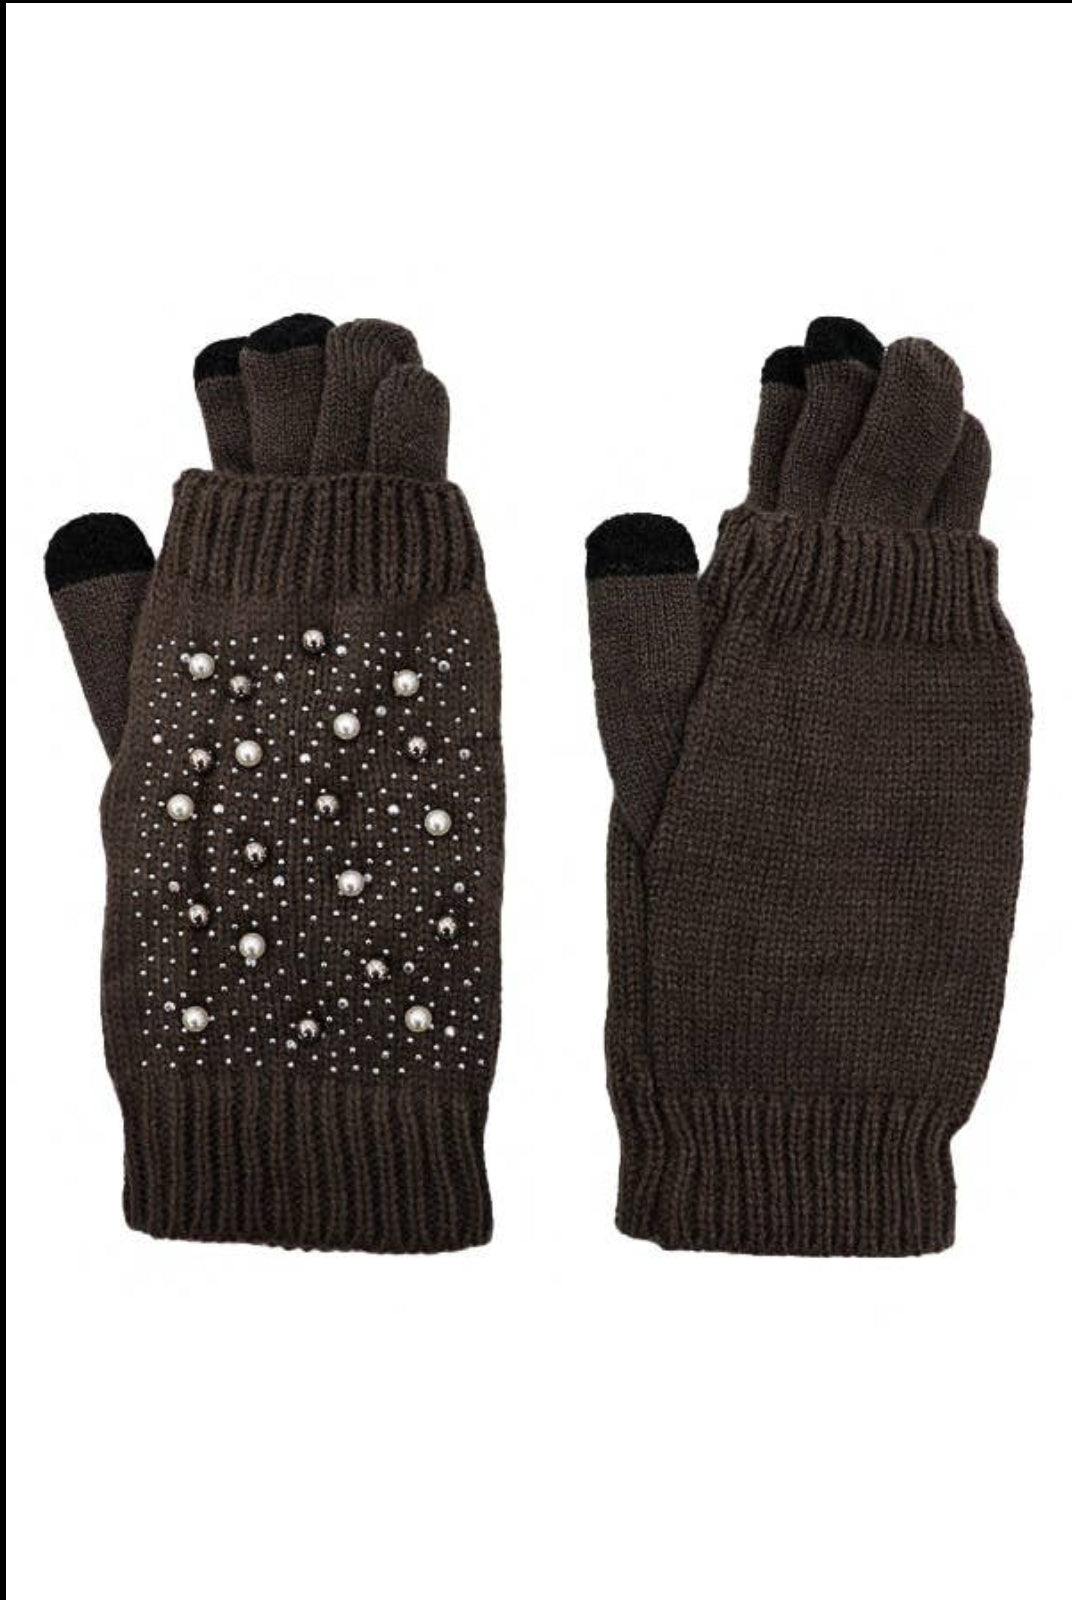 2 in 1 glove